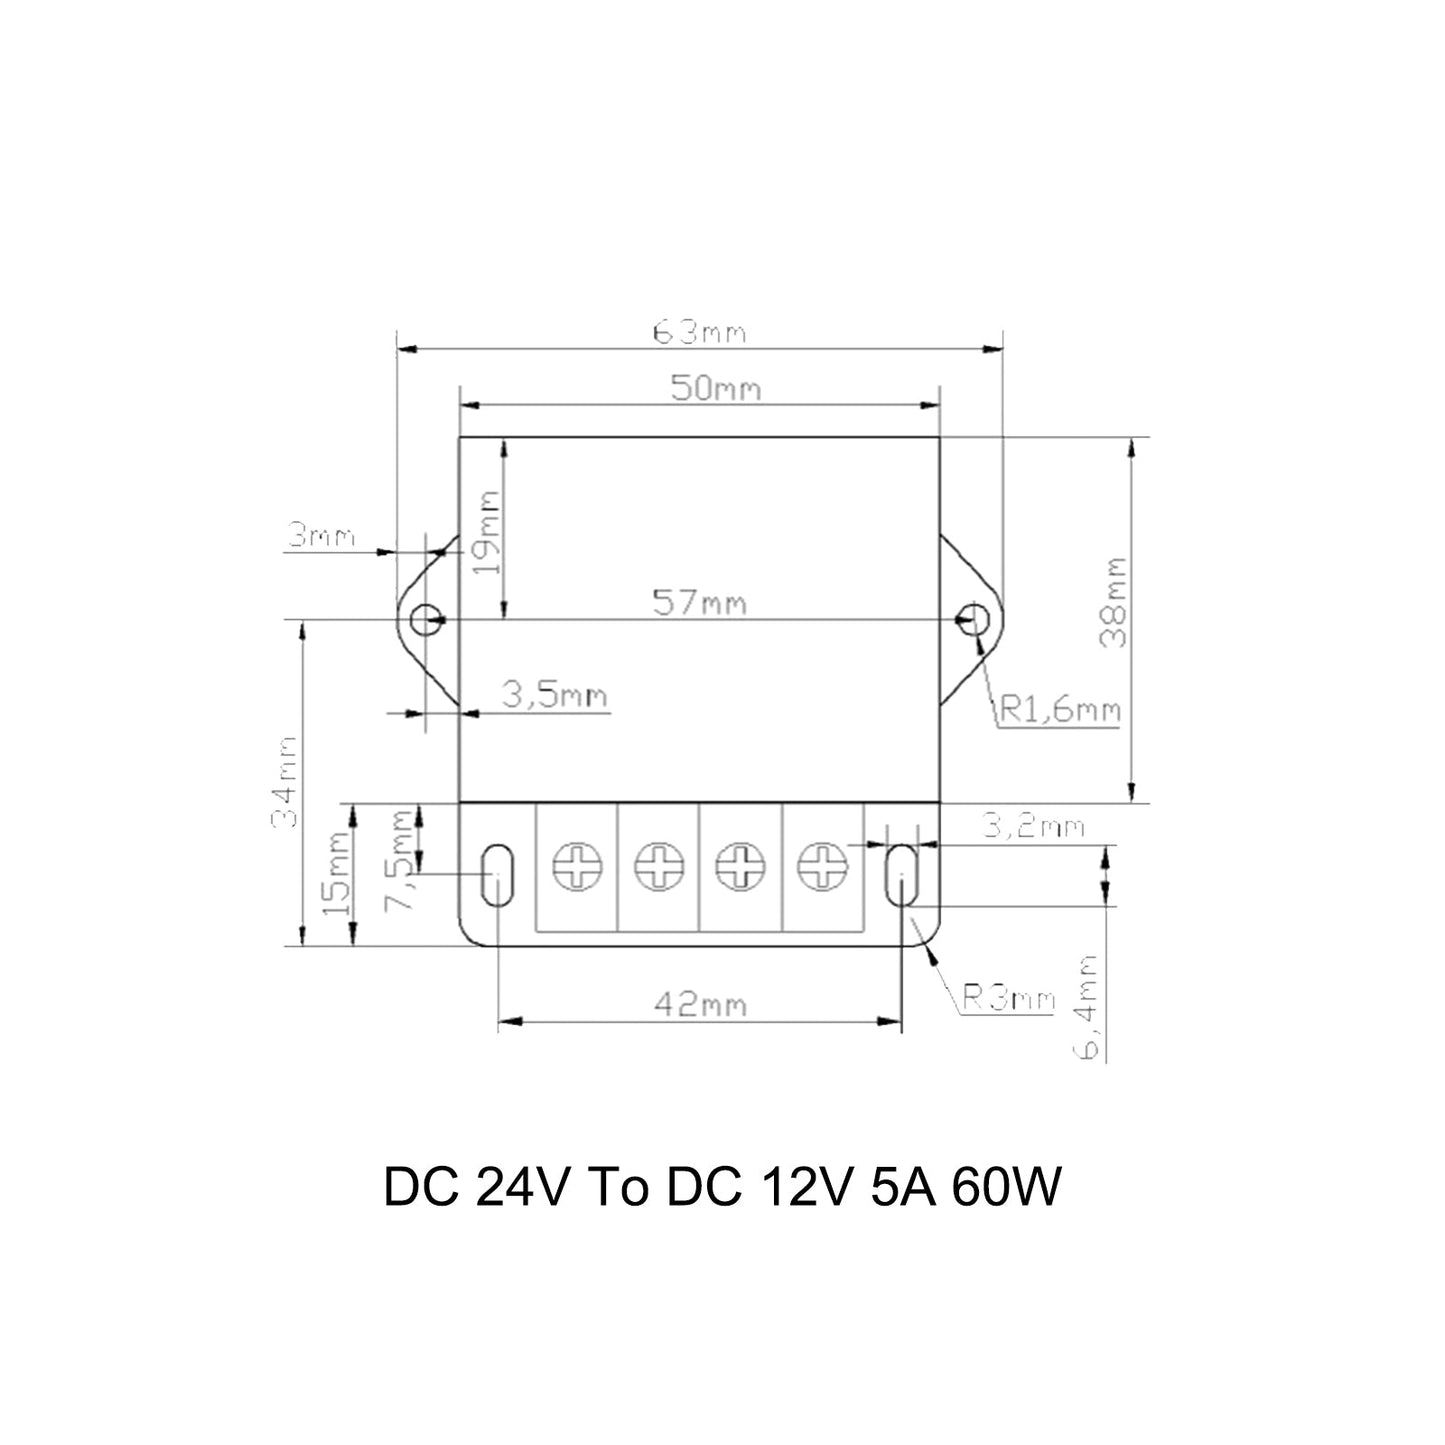 DC 24V Step Down To DC 12V 5A 60W Voltage Regulator Reducer Power Converter